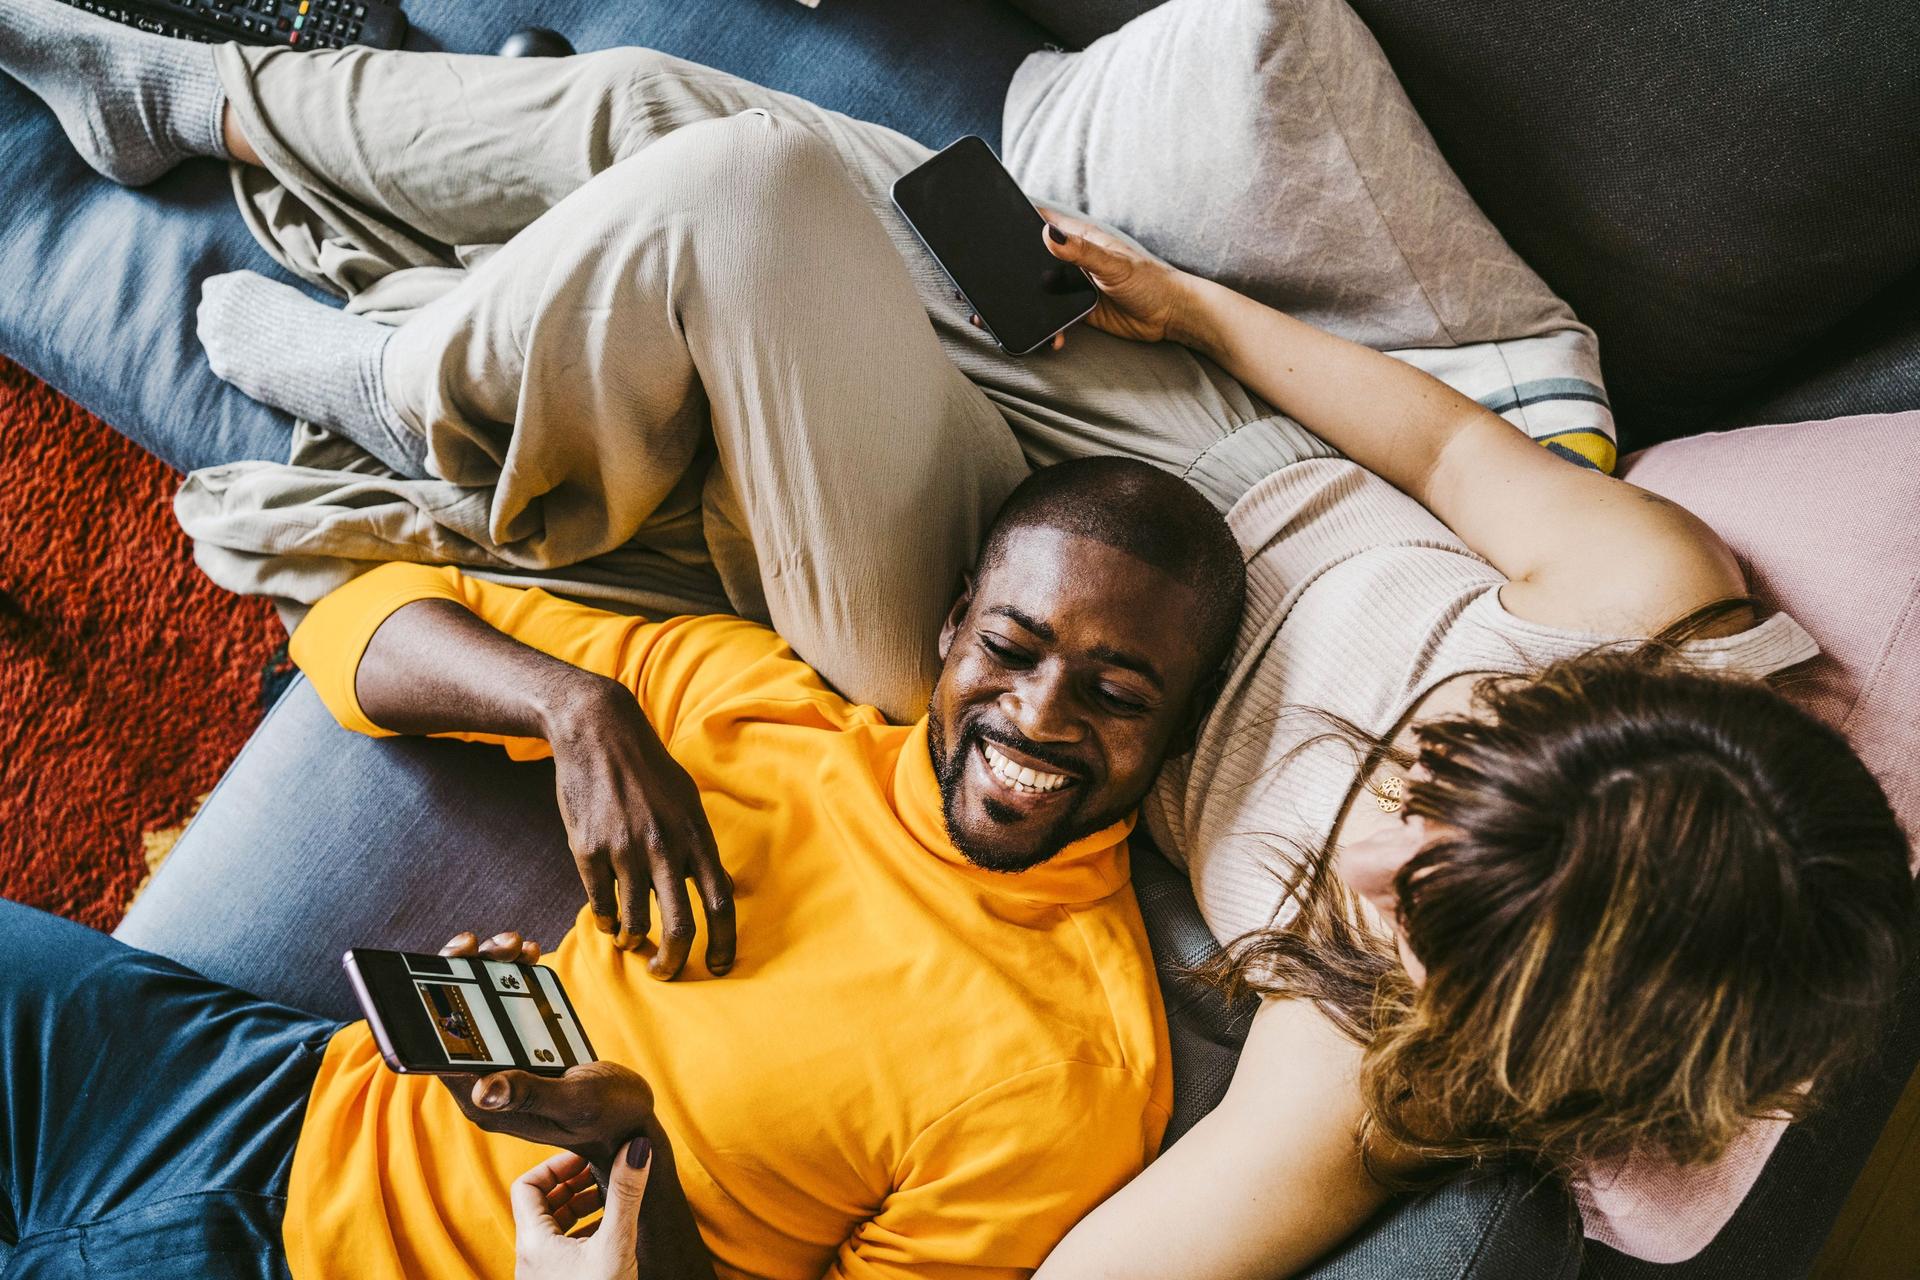 Lachender Mann mit Smartphone in der Hand, der mit seiner Freundin auf dem Sofa liegt und ihr etwas auf dem Bildschirm zeigt.